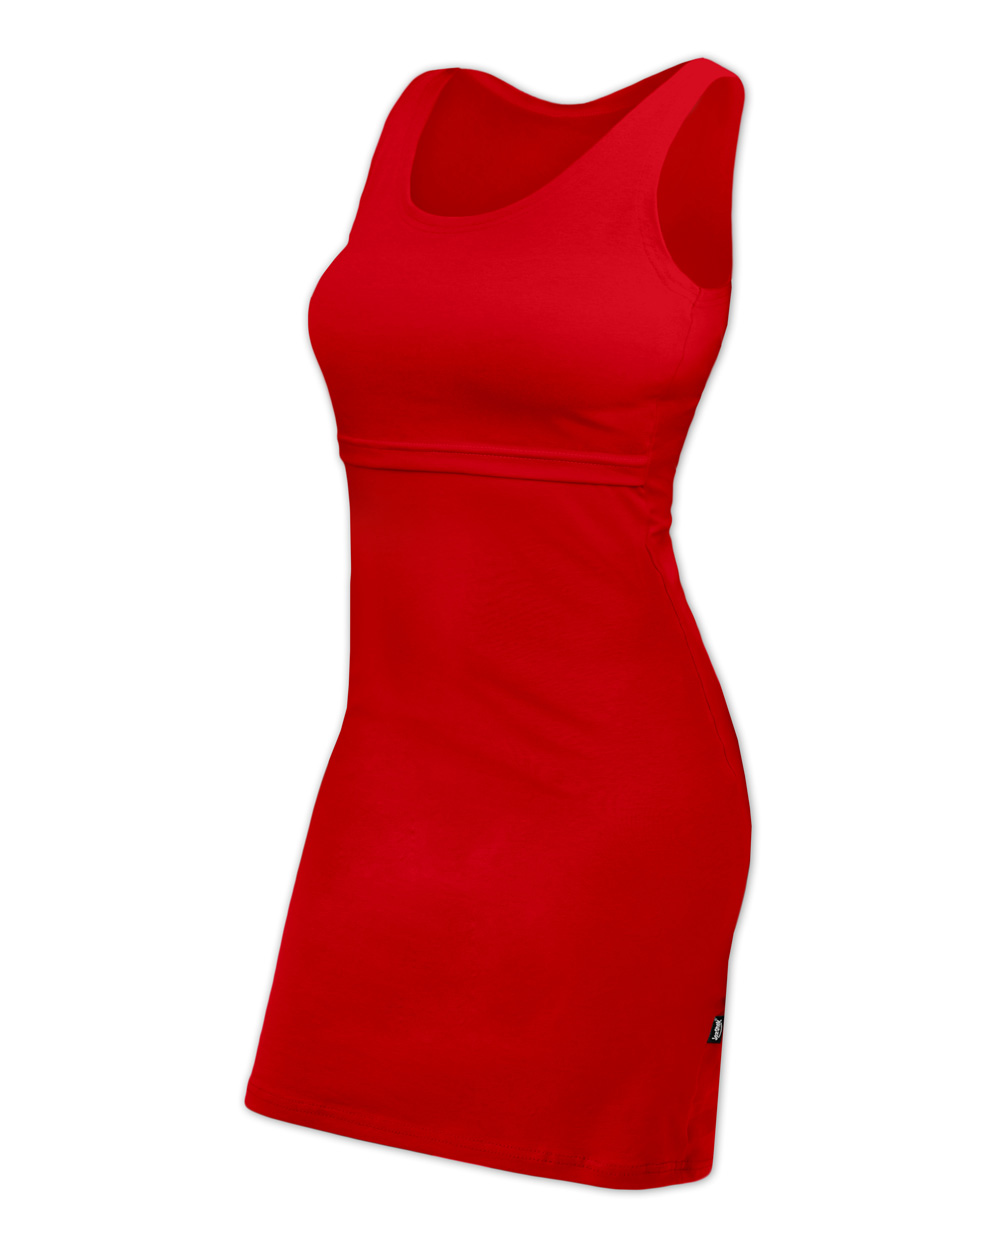 Kojicí šaty ELENA, bez rukávů, červené